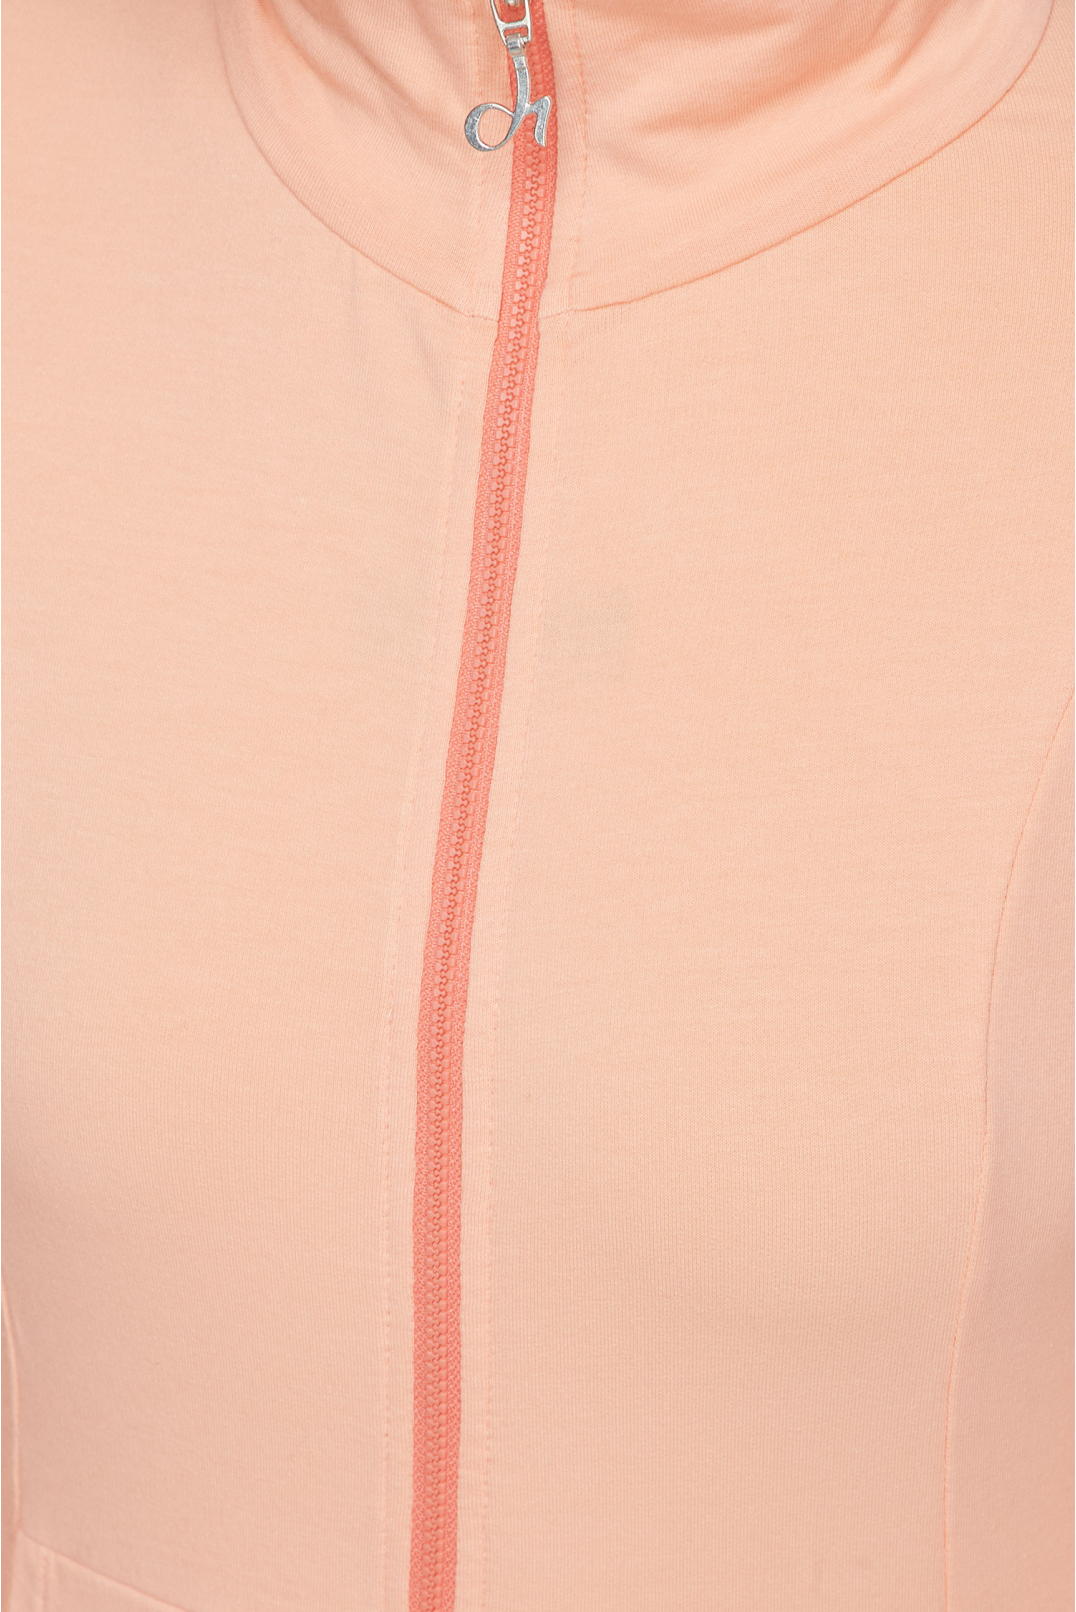 Жіночий персиковий спортивний костюм (кофта, брюки) - 4